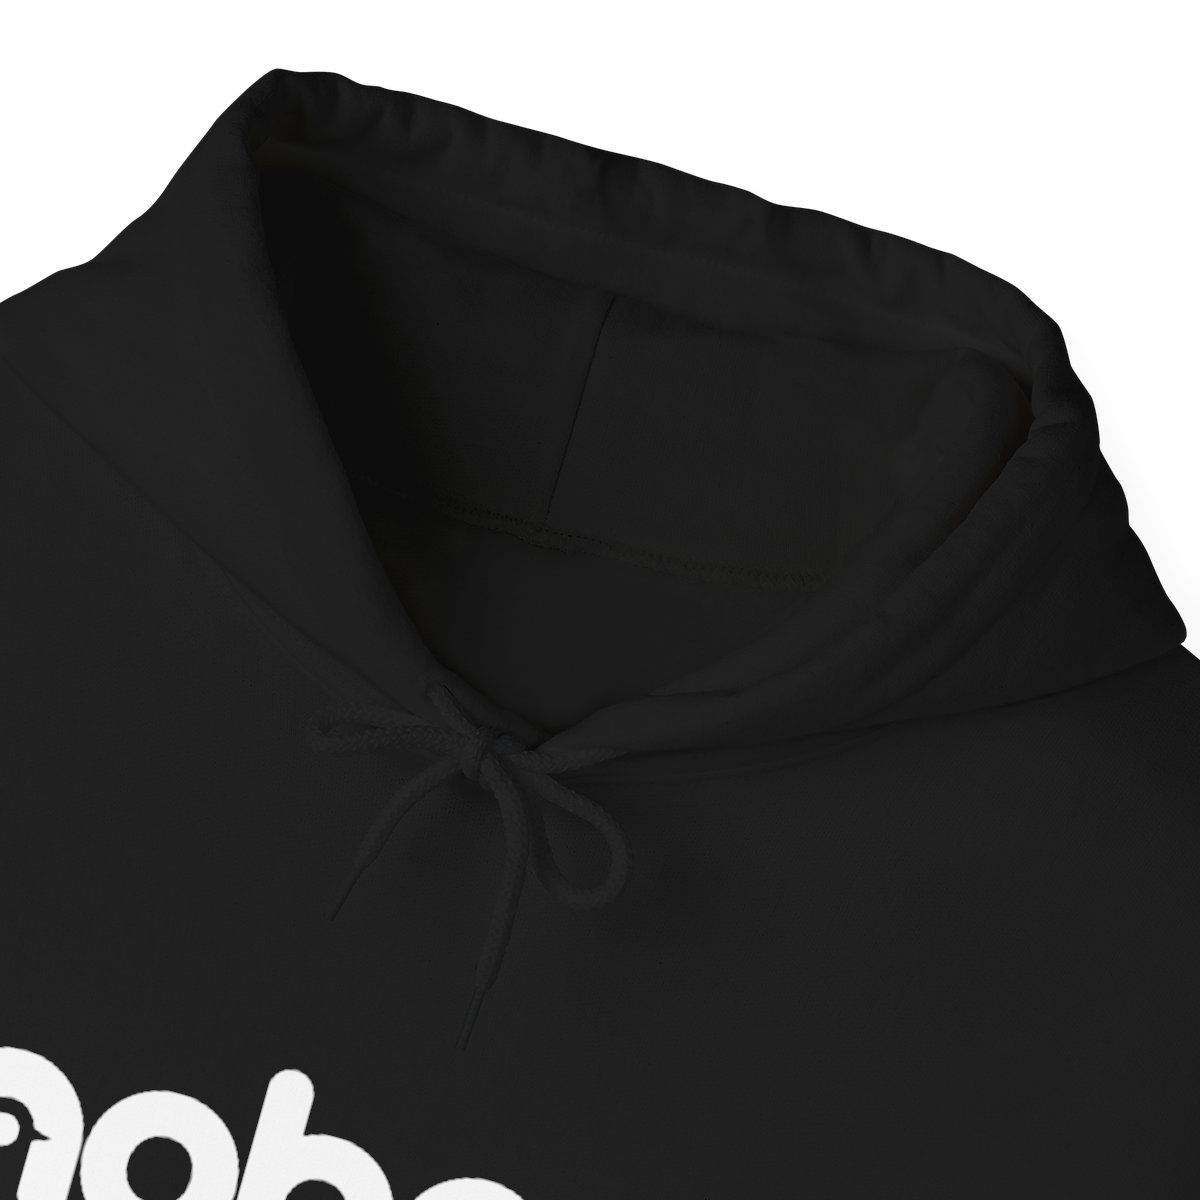 Unisex Heavy Blend™ Hooded Sweatshirt (White Logo) product thumbnail image